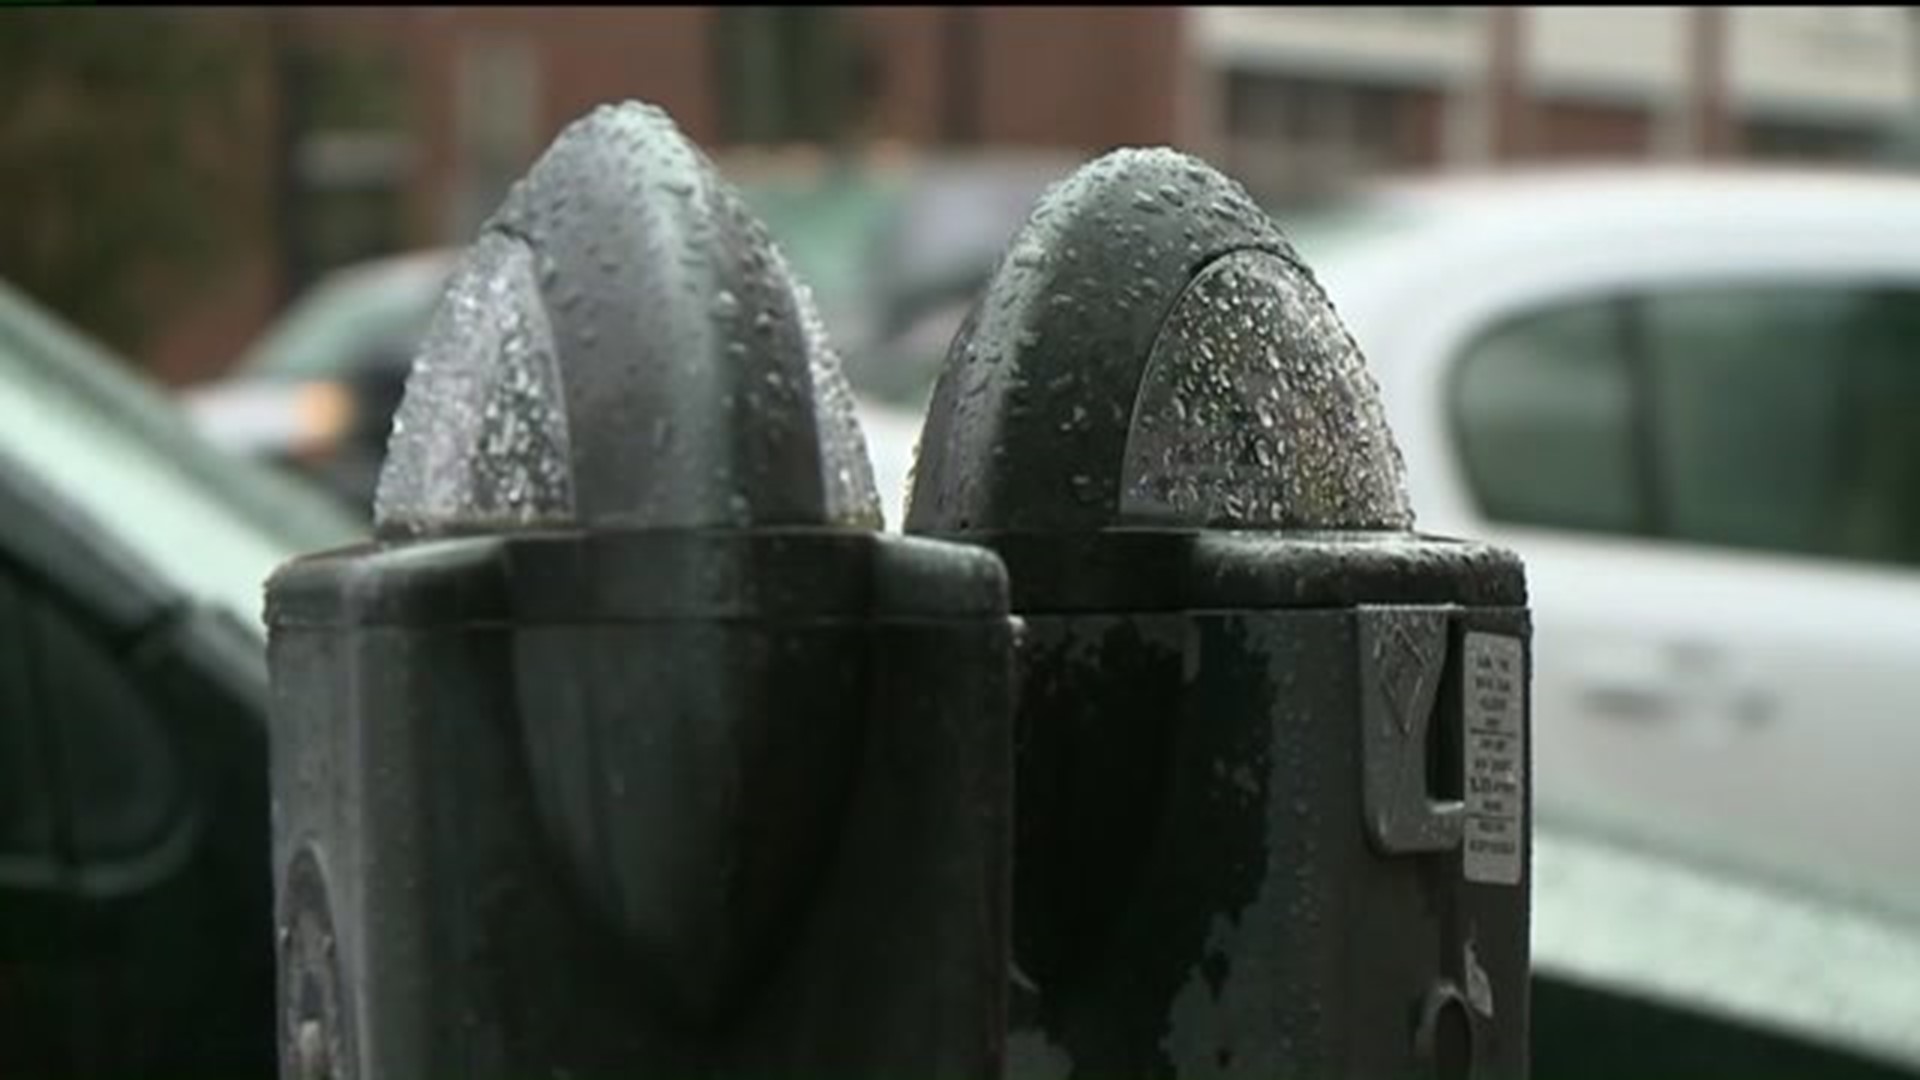 Parking Meters Will Soon Take Plastic in Stroudsburg